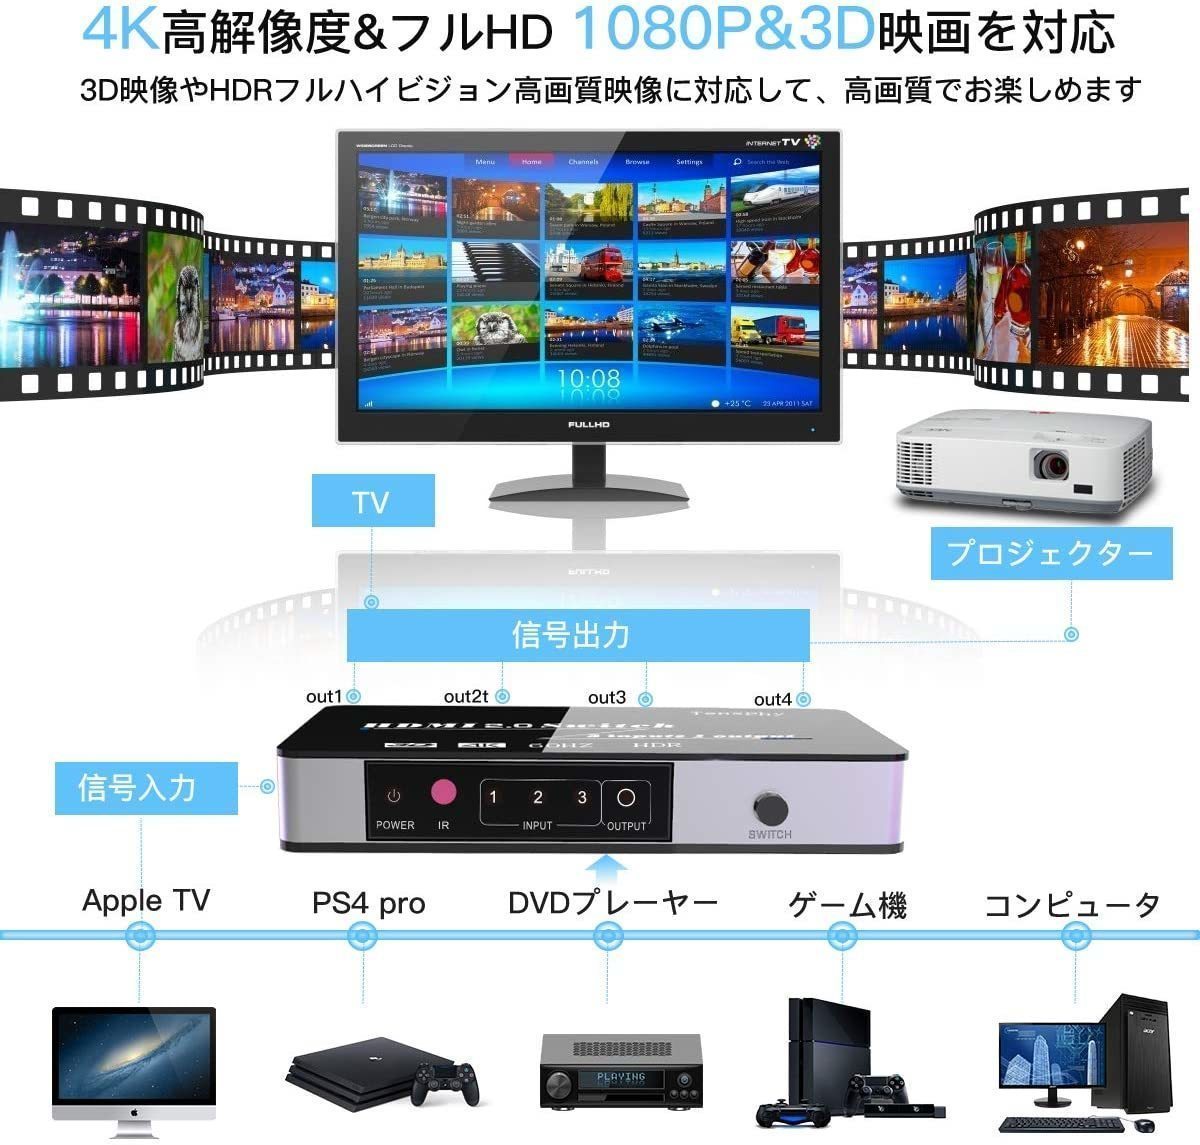 【新品送料無料】 Tensphy HDMI切替器 HDMIセレクター 3入力1出力 HDMI分配器 自由切り替え Apple TV/Chromecast/Switch/Xbox/HDTV/PS4